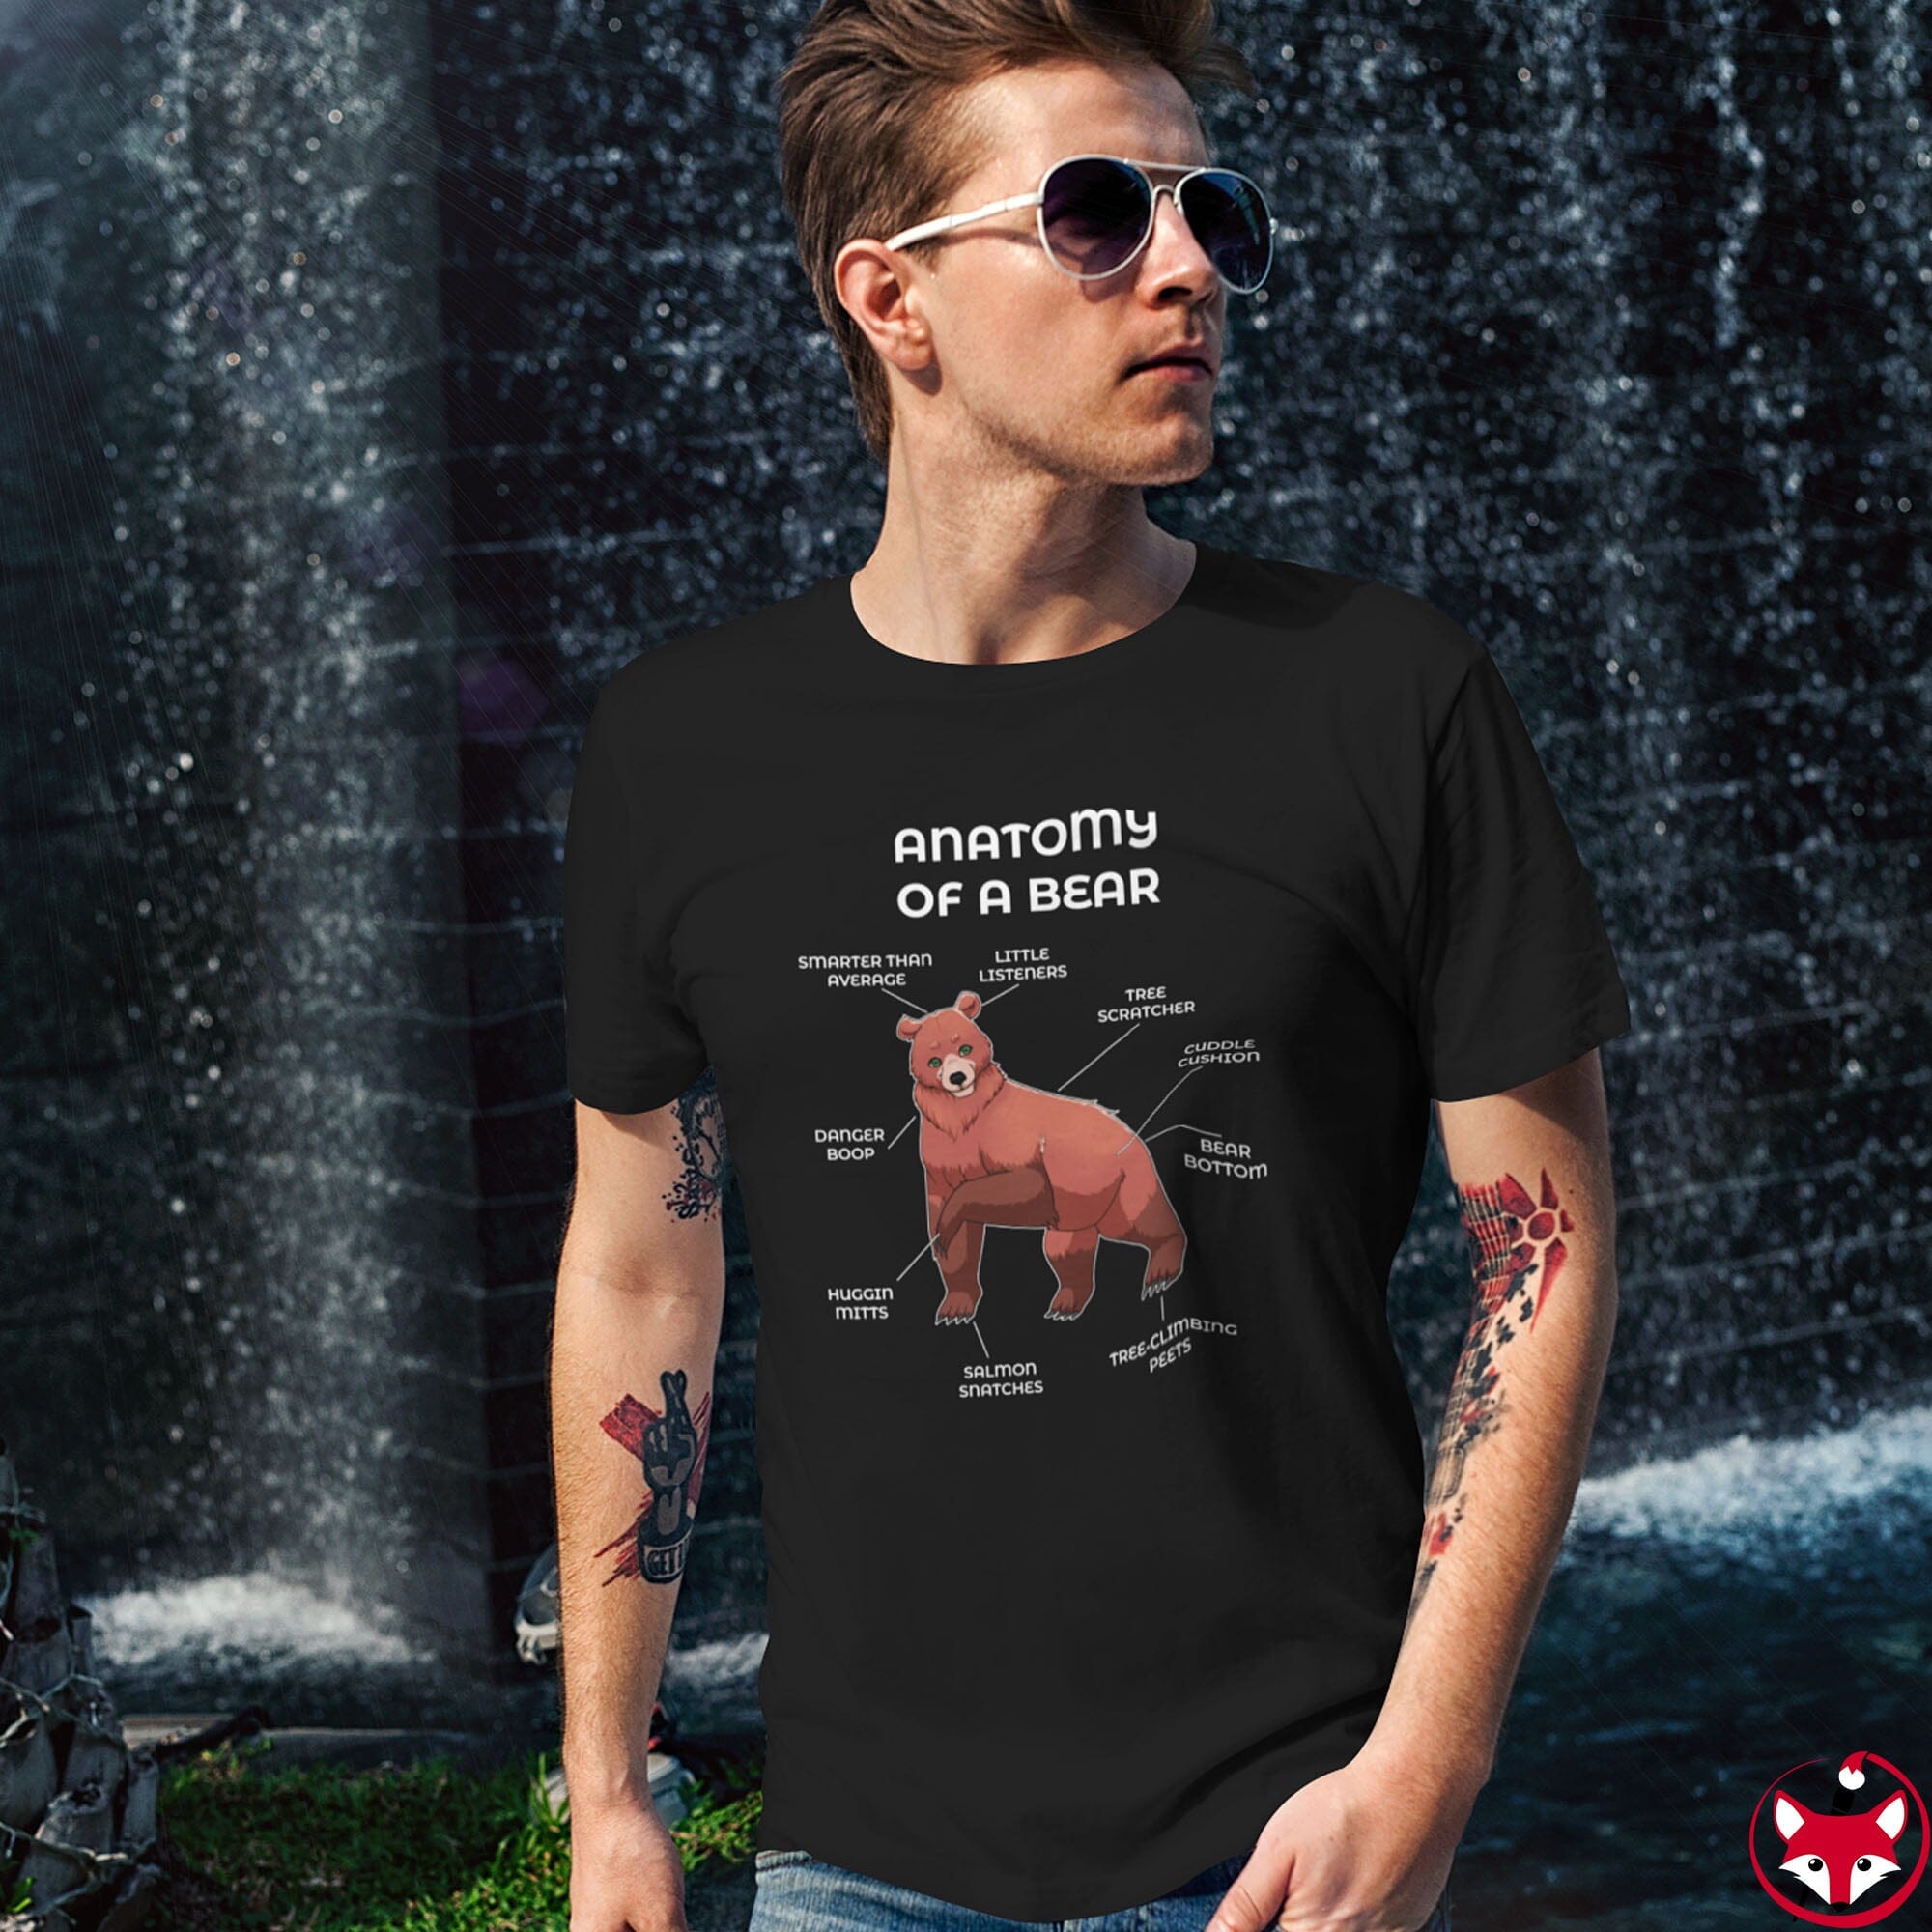 Bear Red - T-Shirt T-Shirt Artworktee 